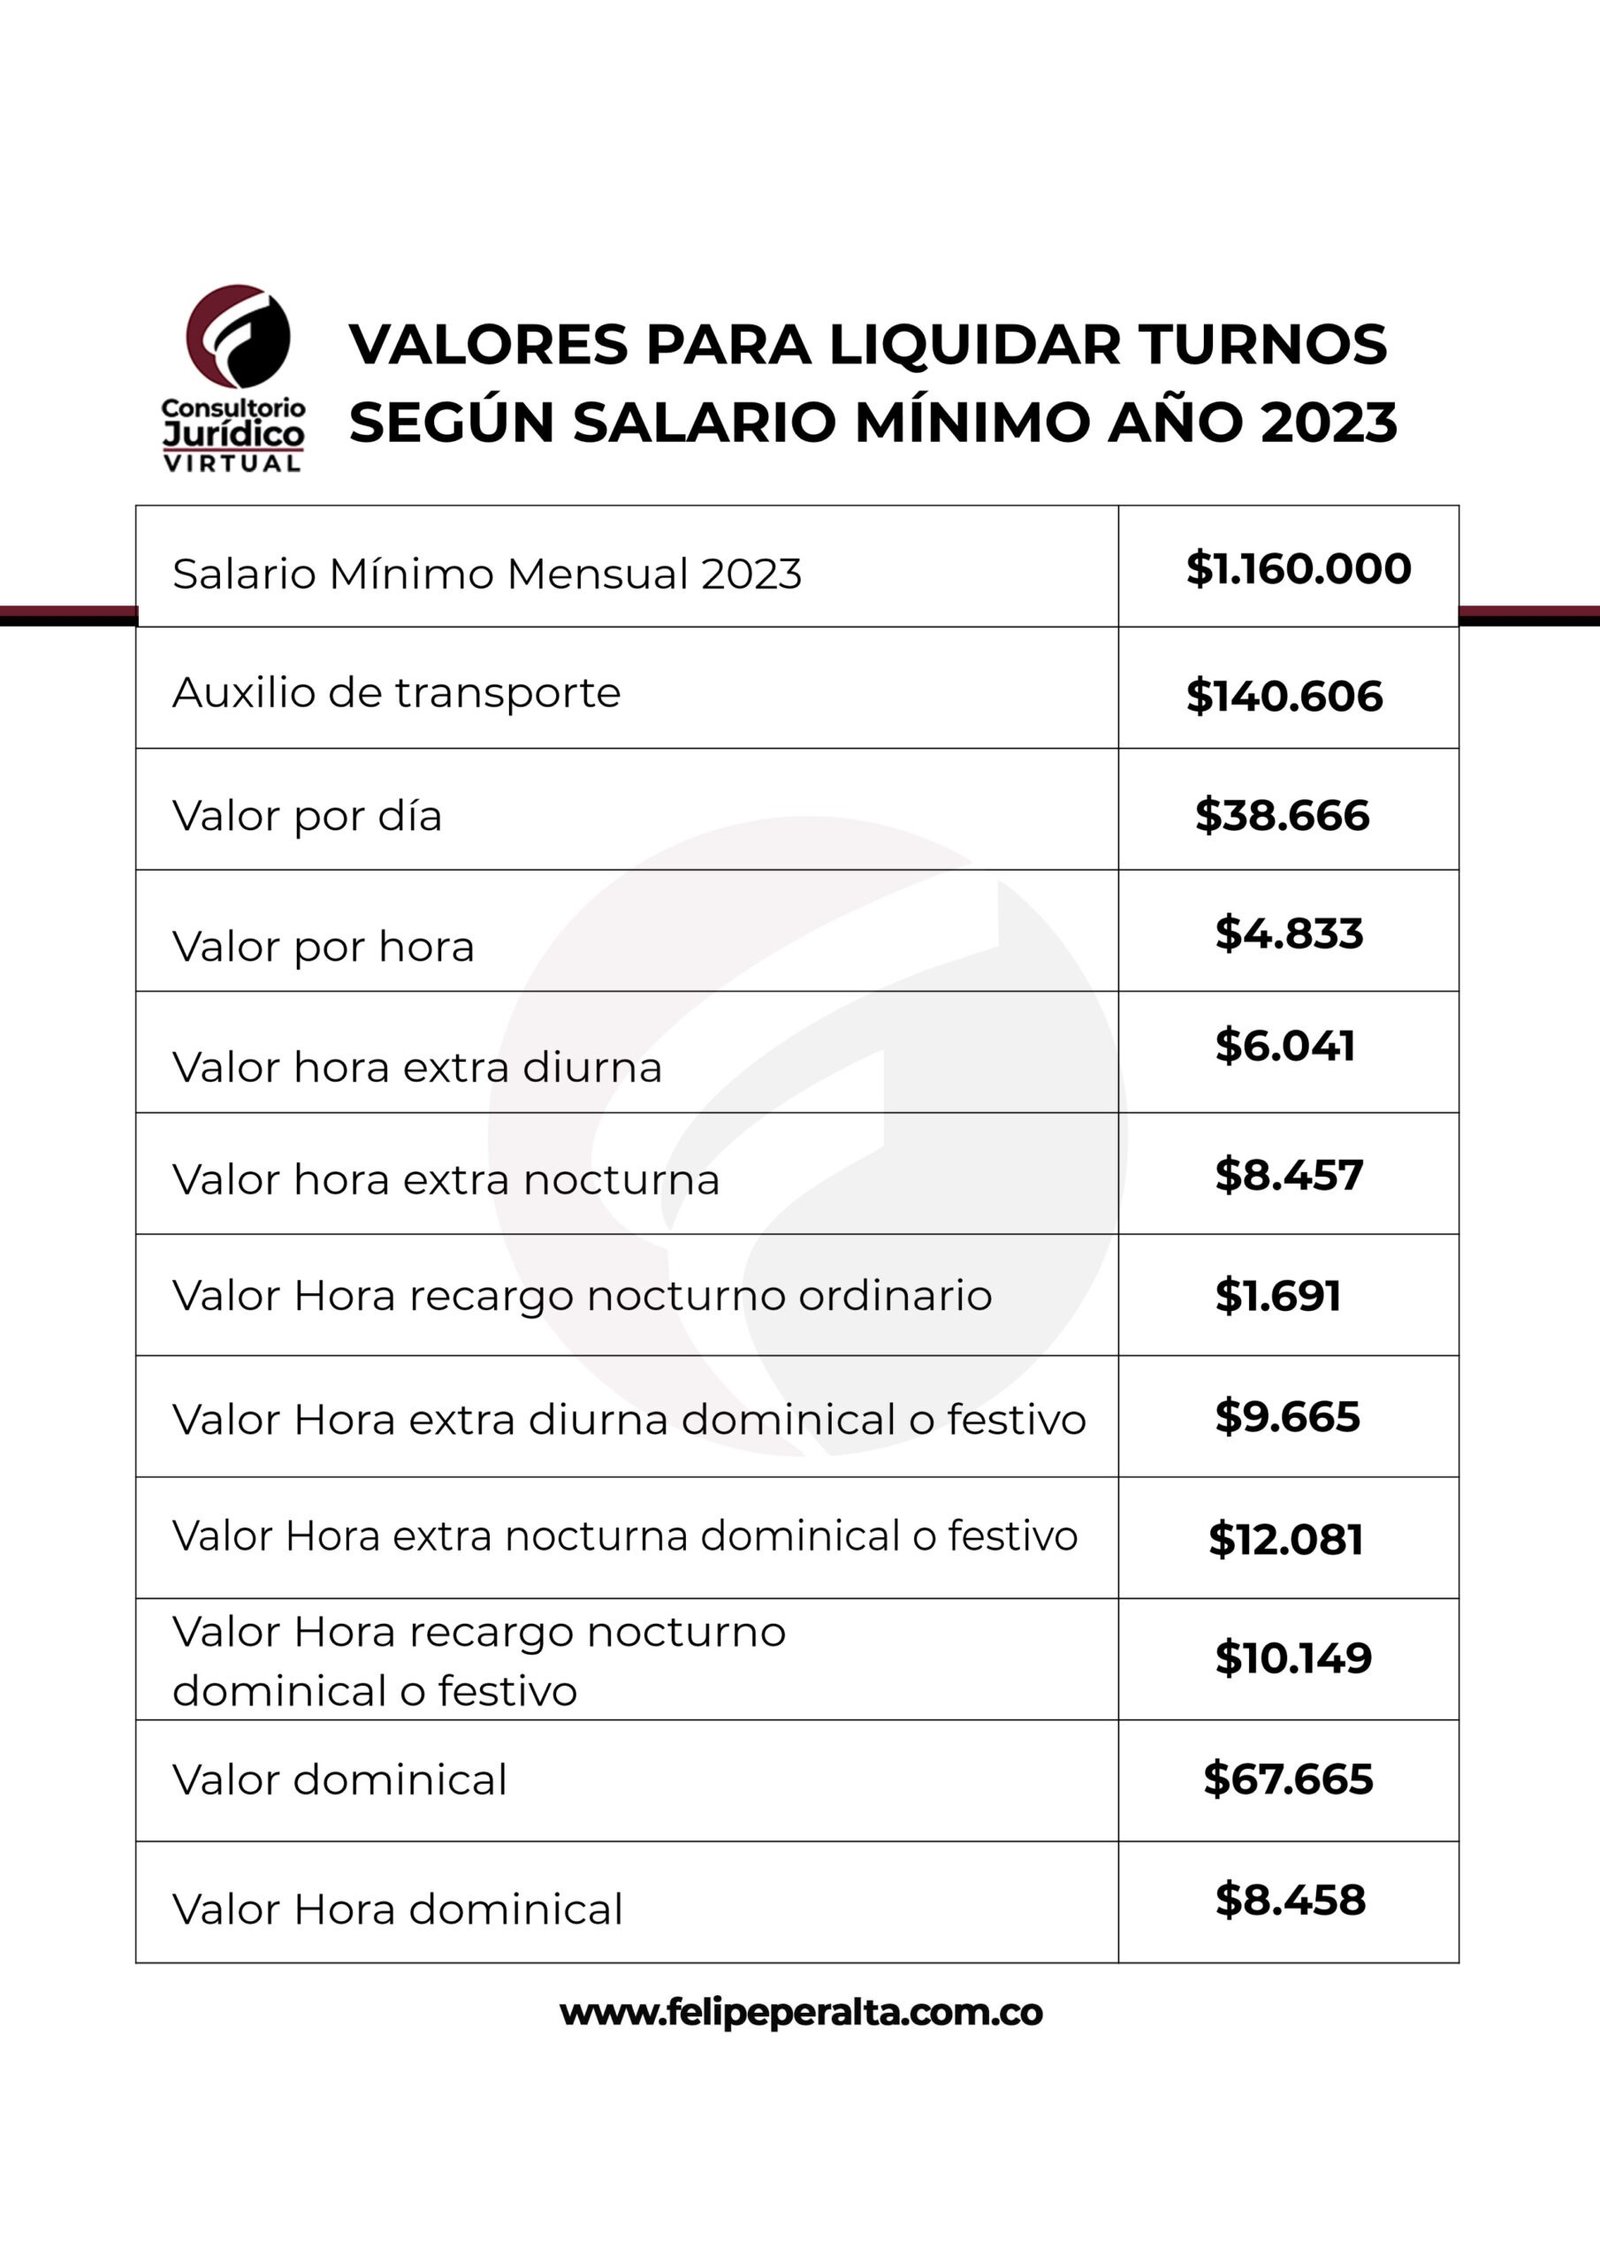 Salario Mínimo Mensual Legal en Colombia Año 2023 Consultorio